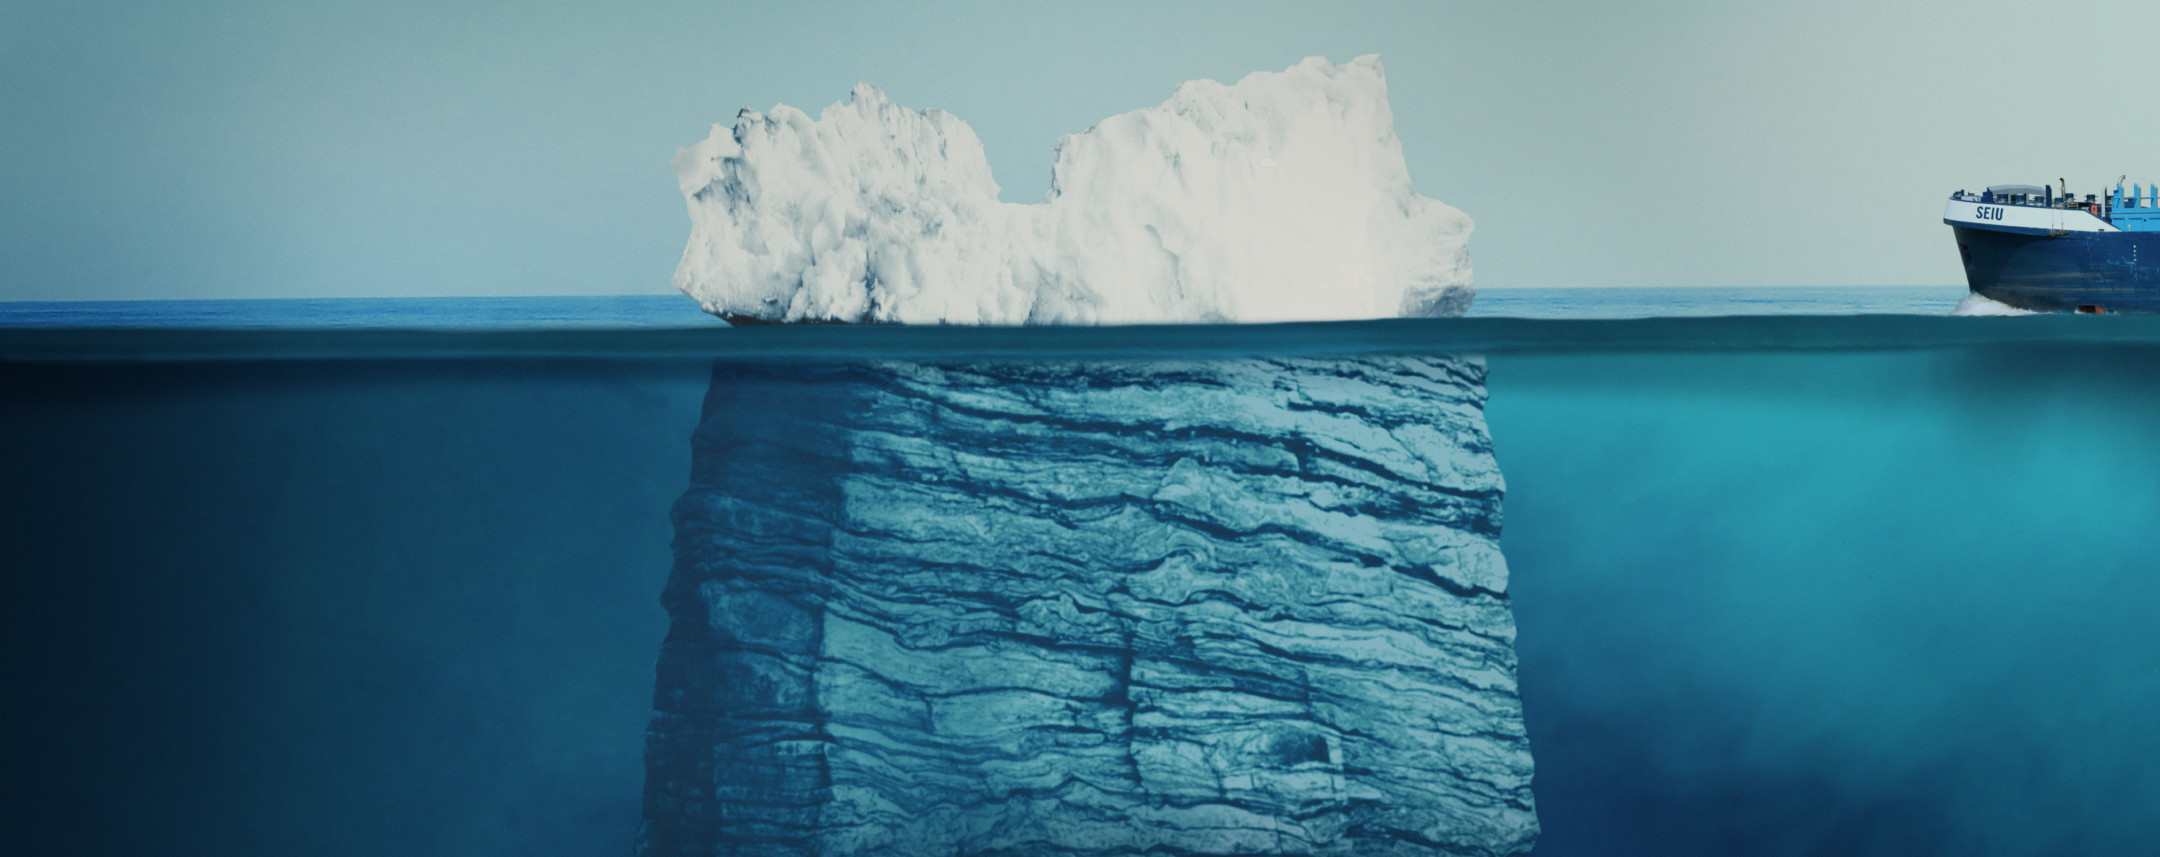 Iceberg-FEATURED.jpg